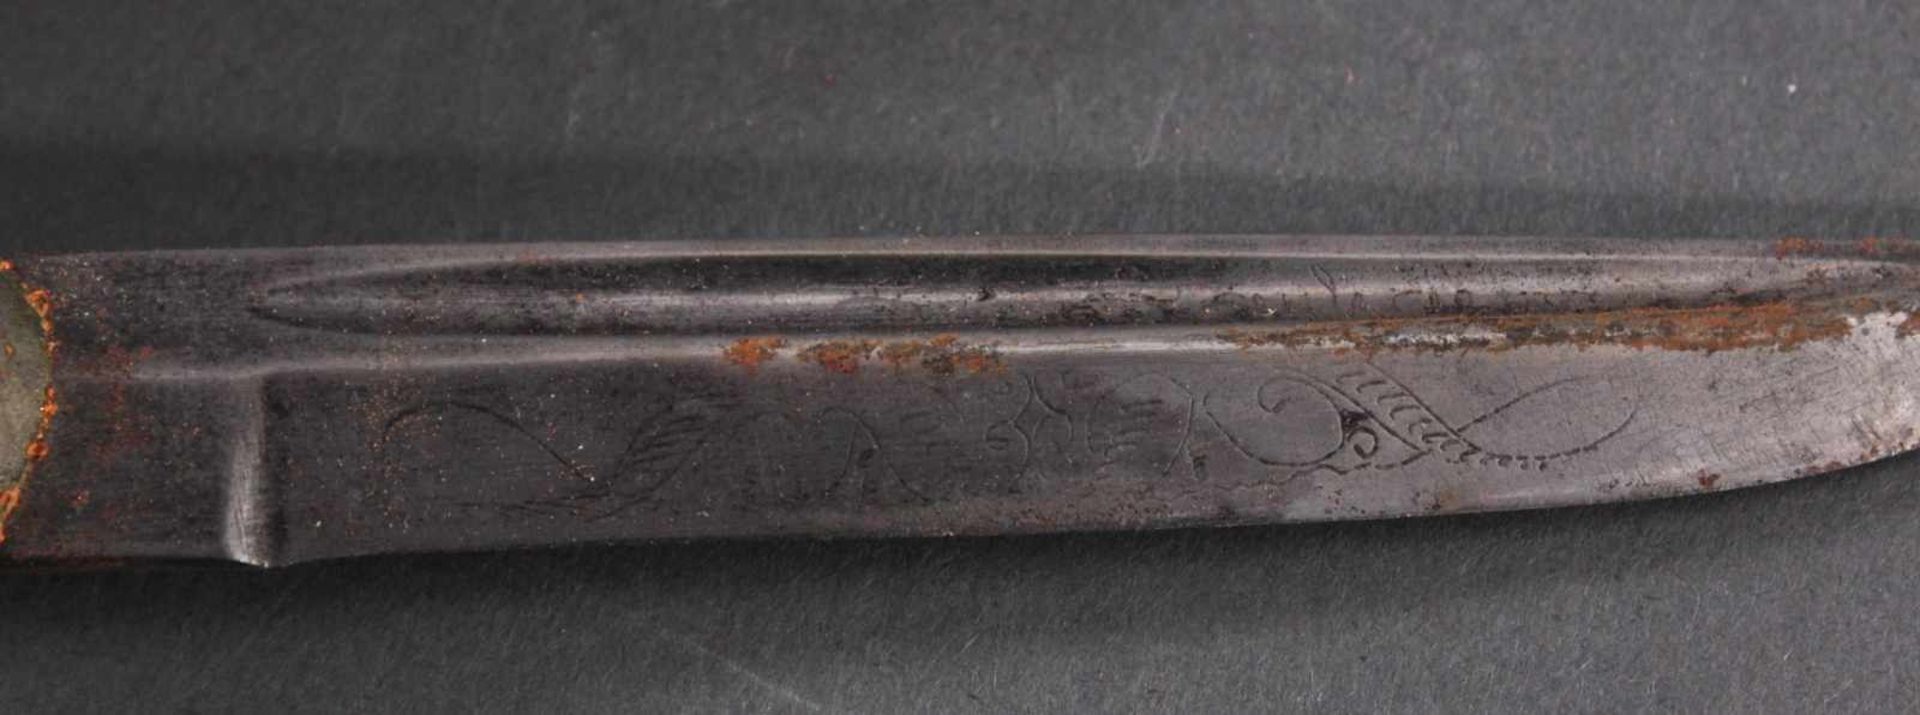 3 Messer2 Messer mit verzierter Klinge, Lederscheide mit Metallaplikationen, Griffe aus Bakelit, - Image 6 of 8